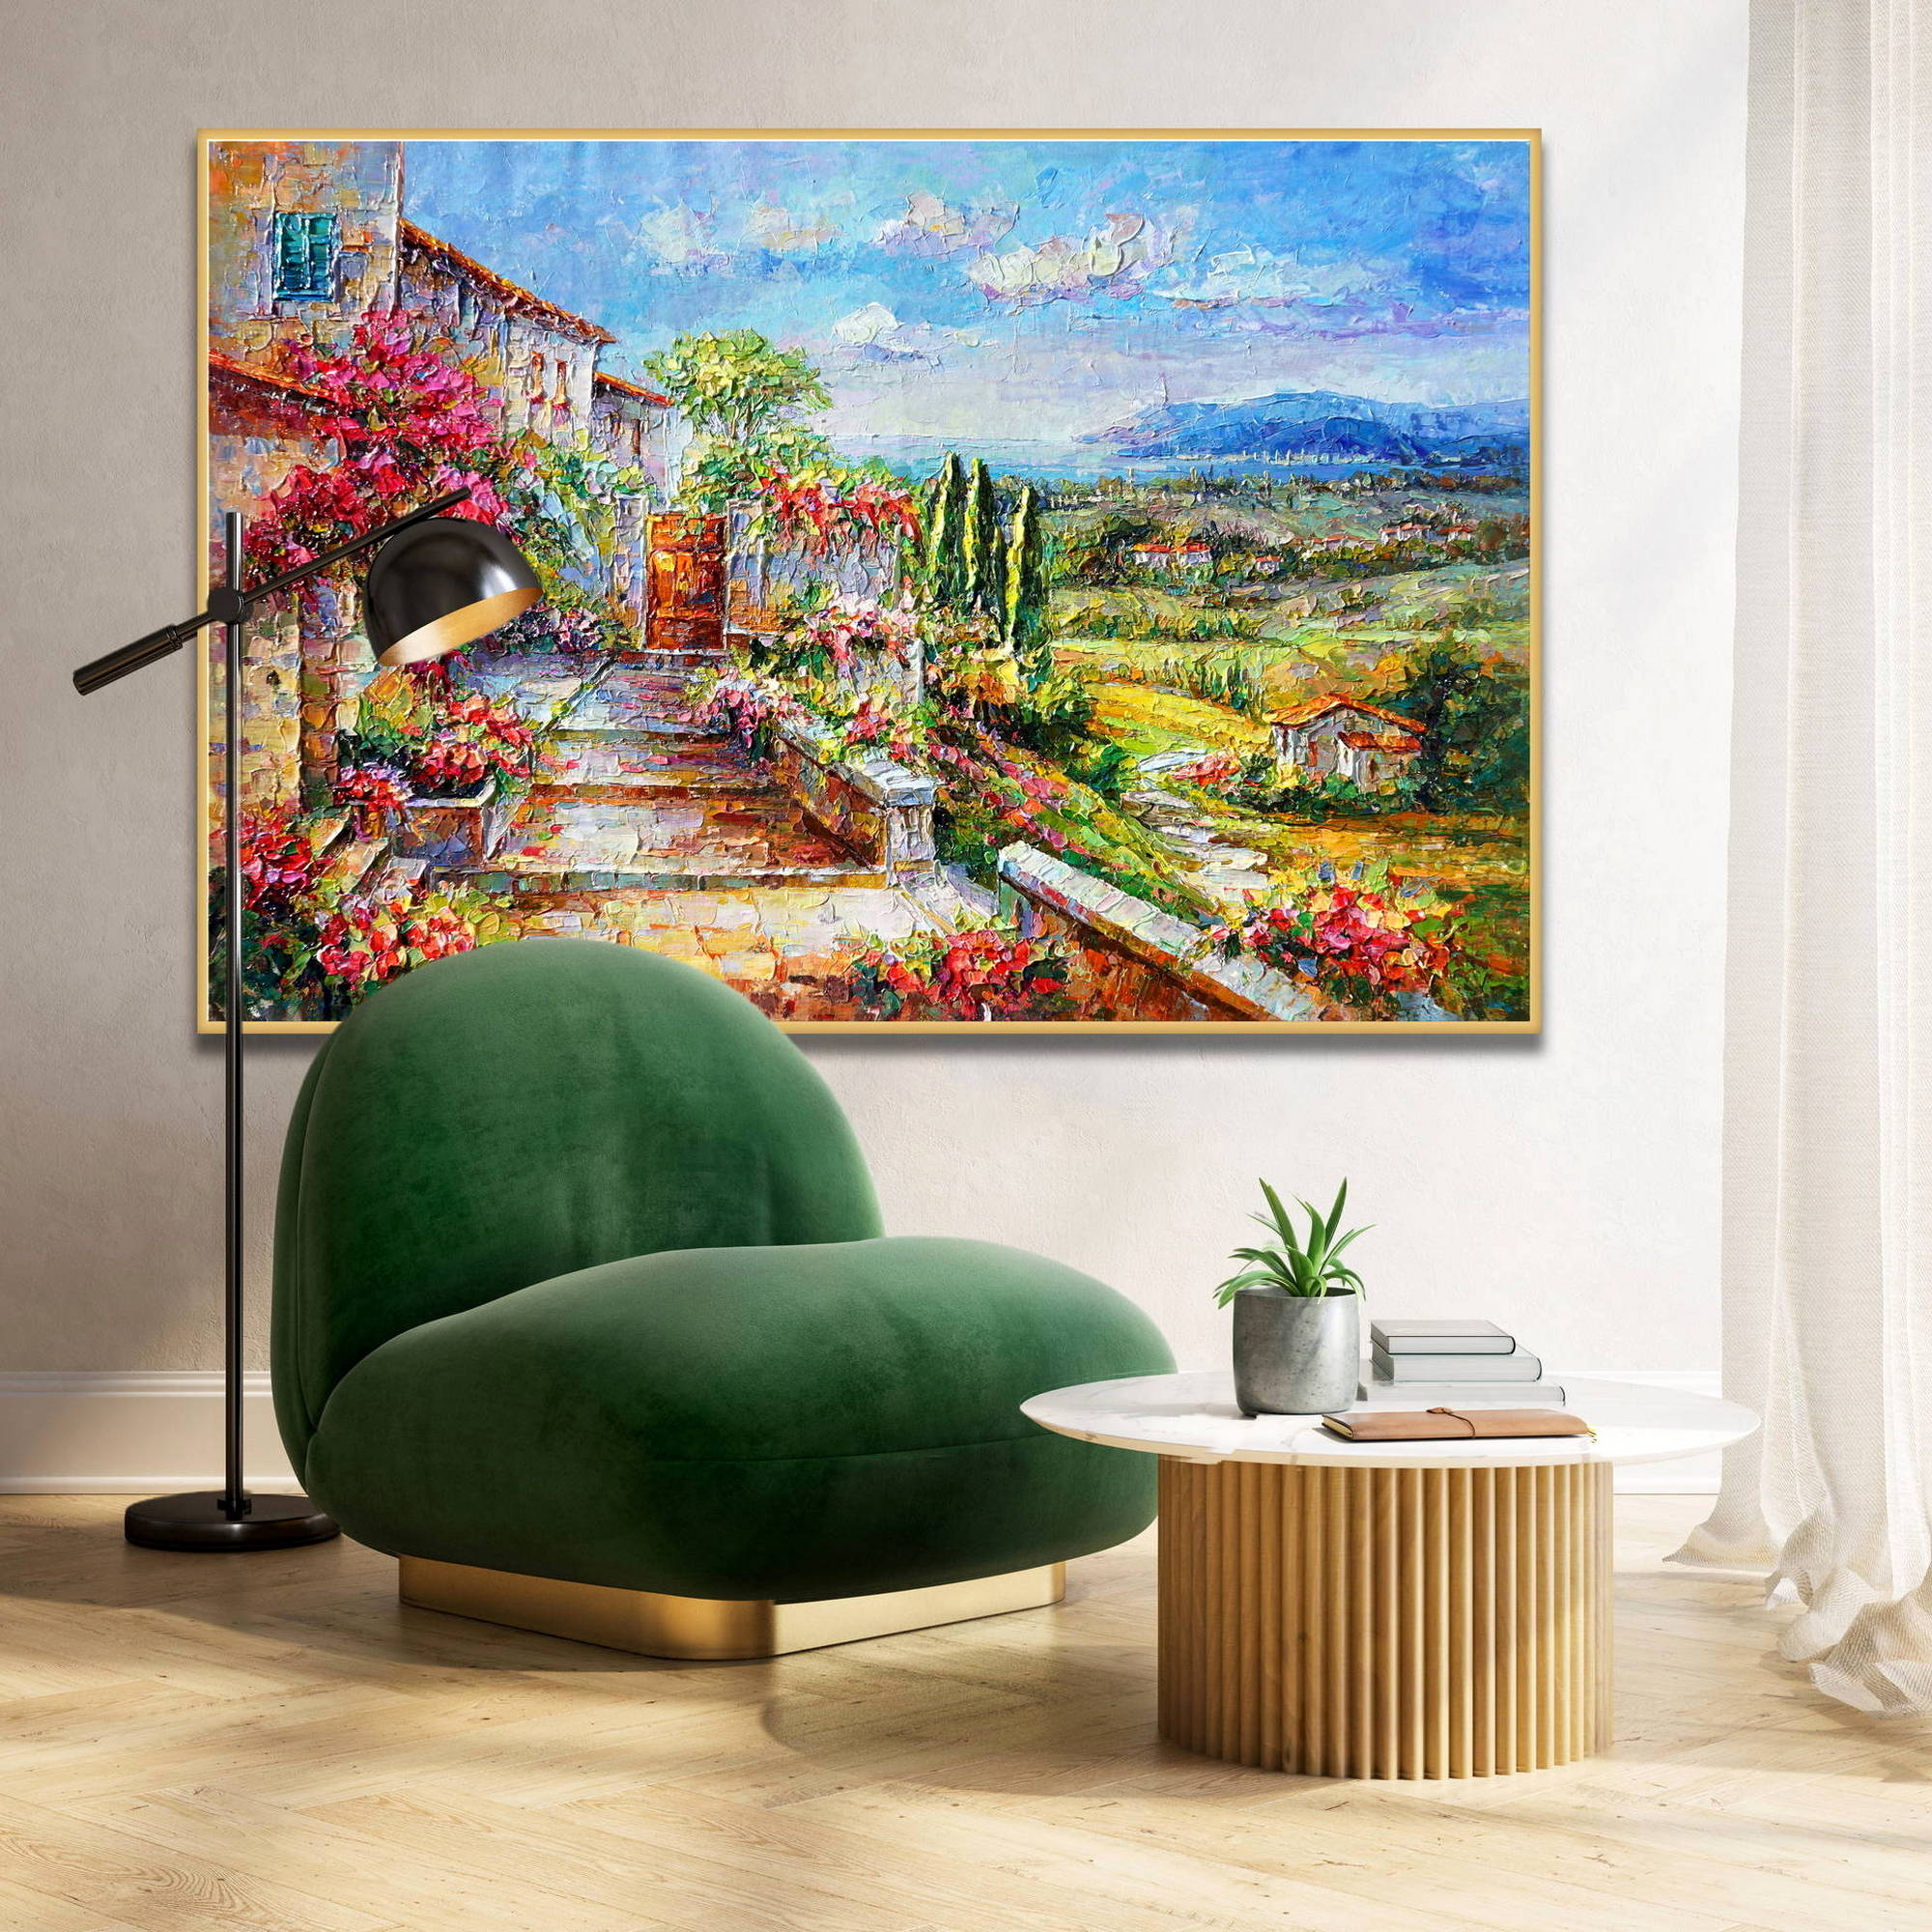 Dipinto paesaggio campagna toscana con scalinate e fiori